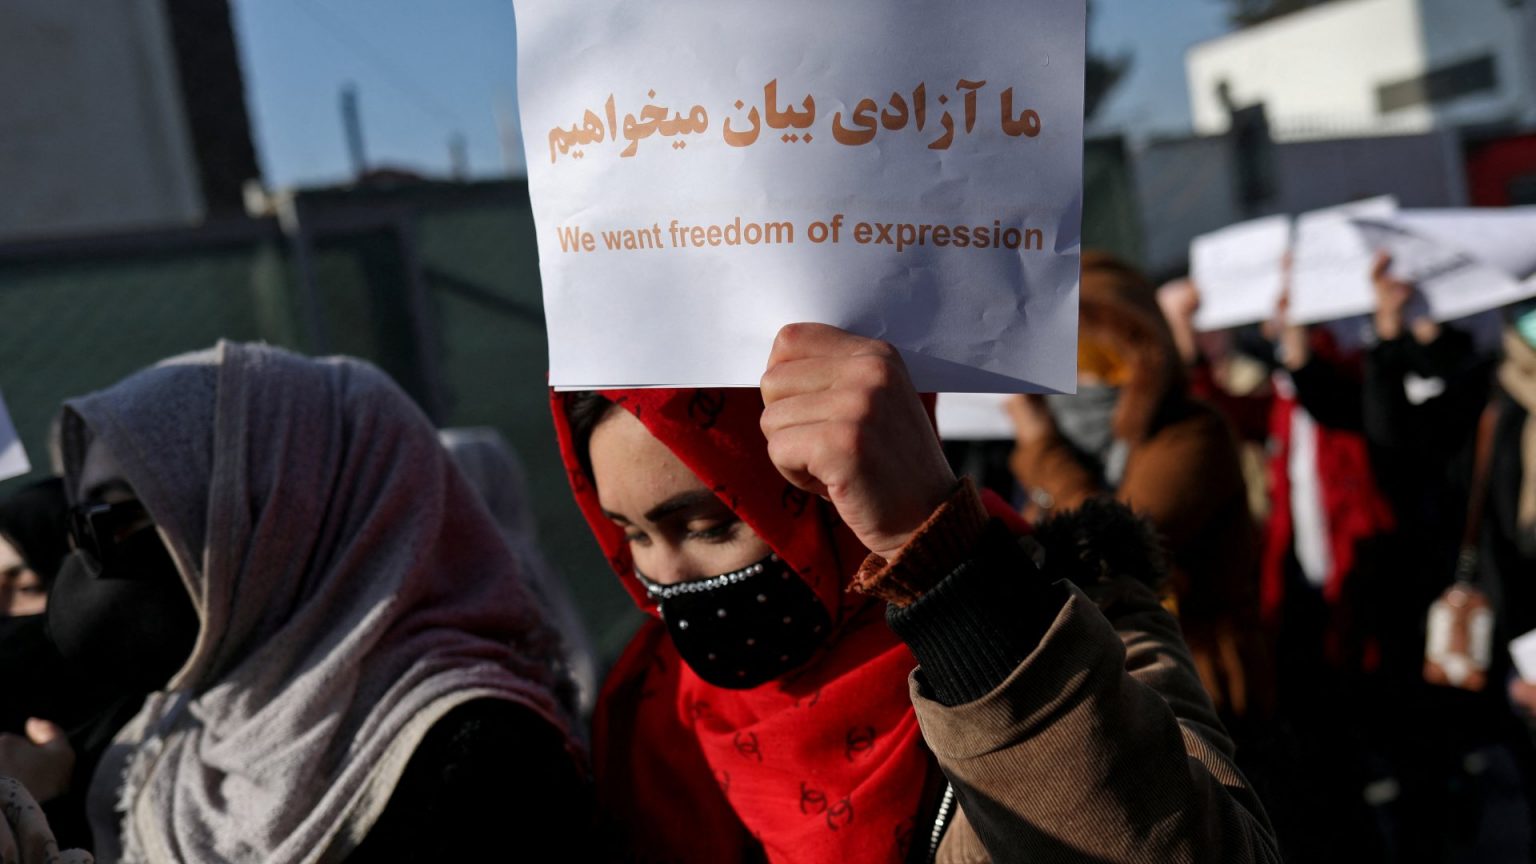 Las mujeres afganas, las grandes perjudicadas del ascenso talibán